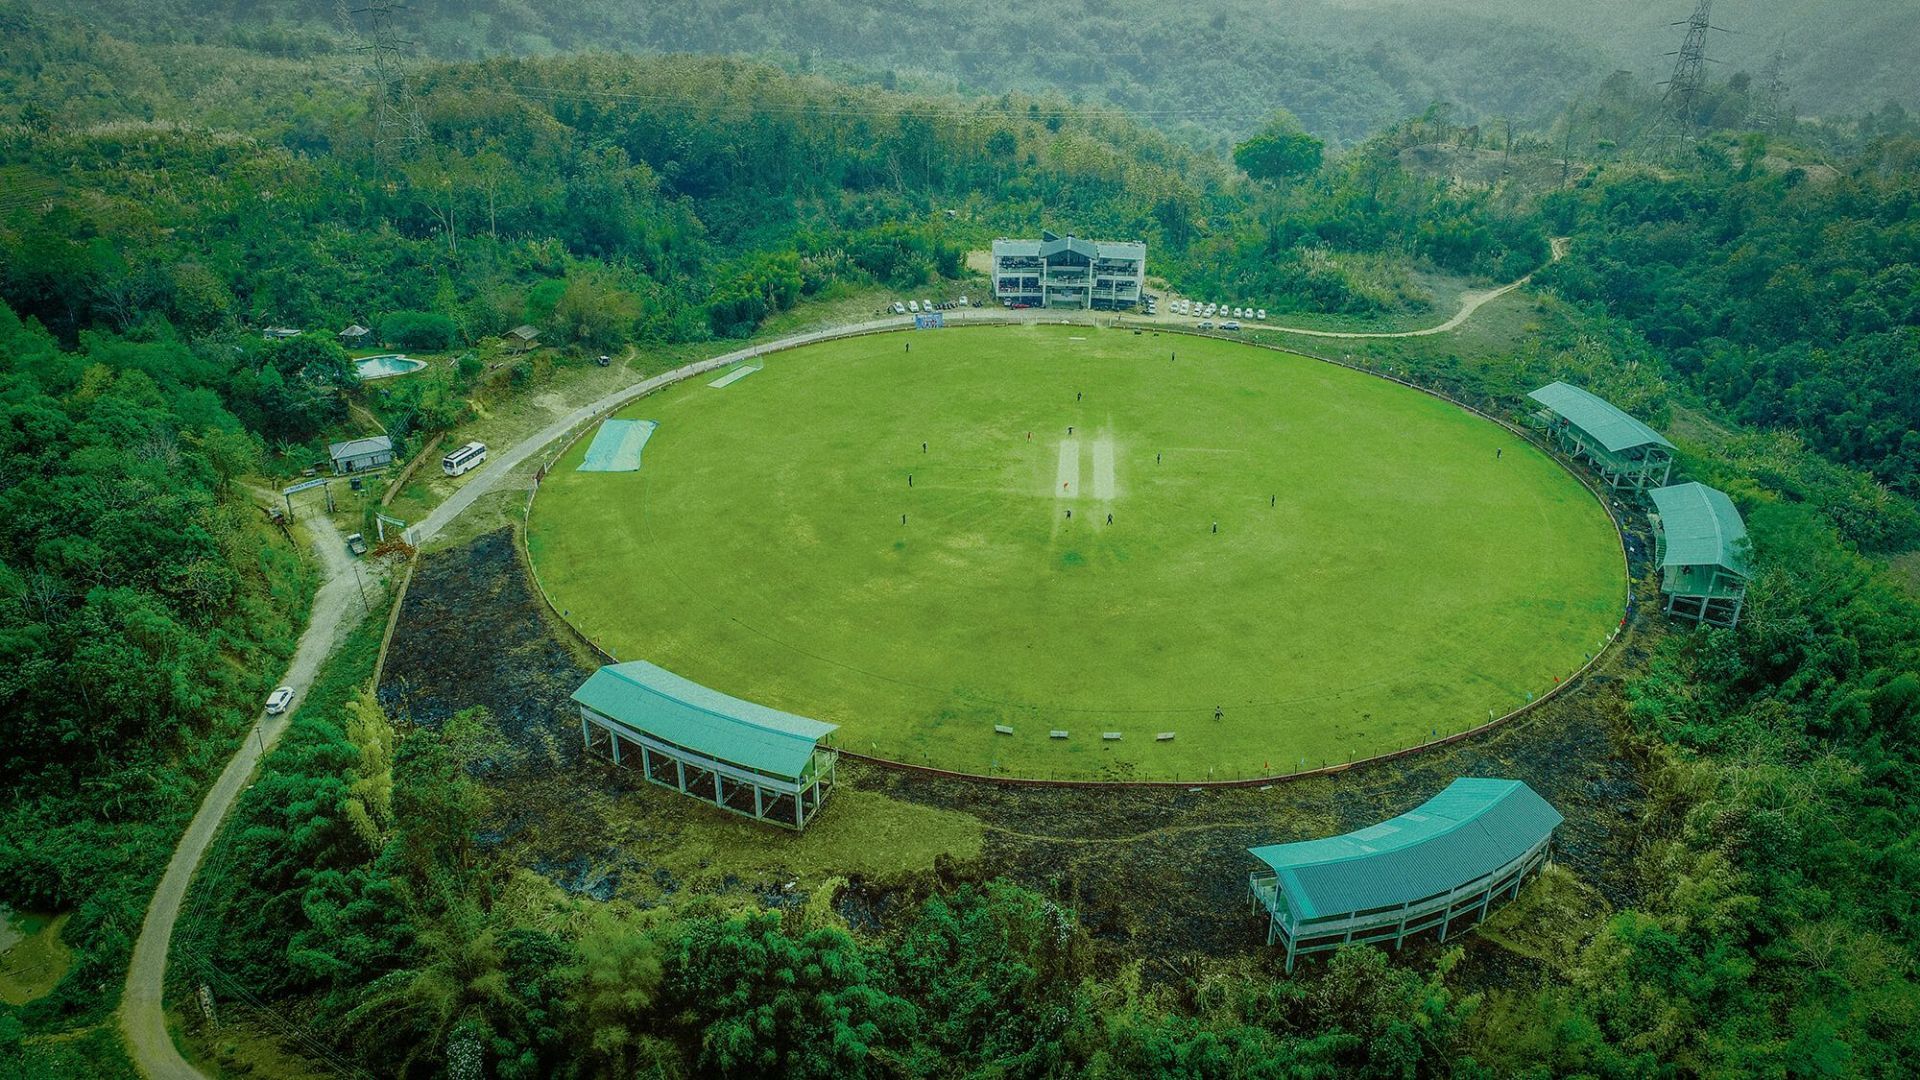 (Image Courtesy: Cricket Assoiciation of Mizoram)